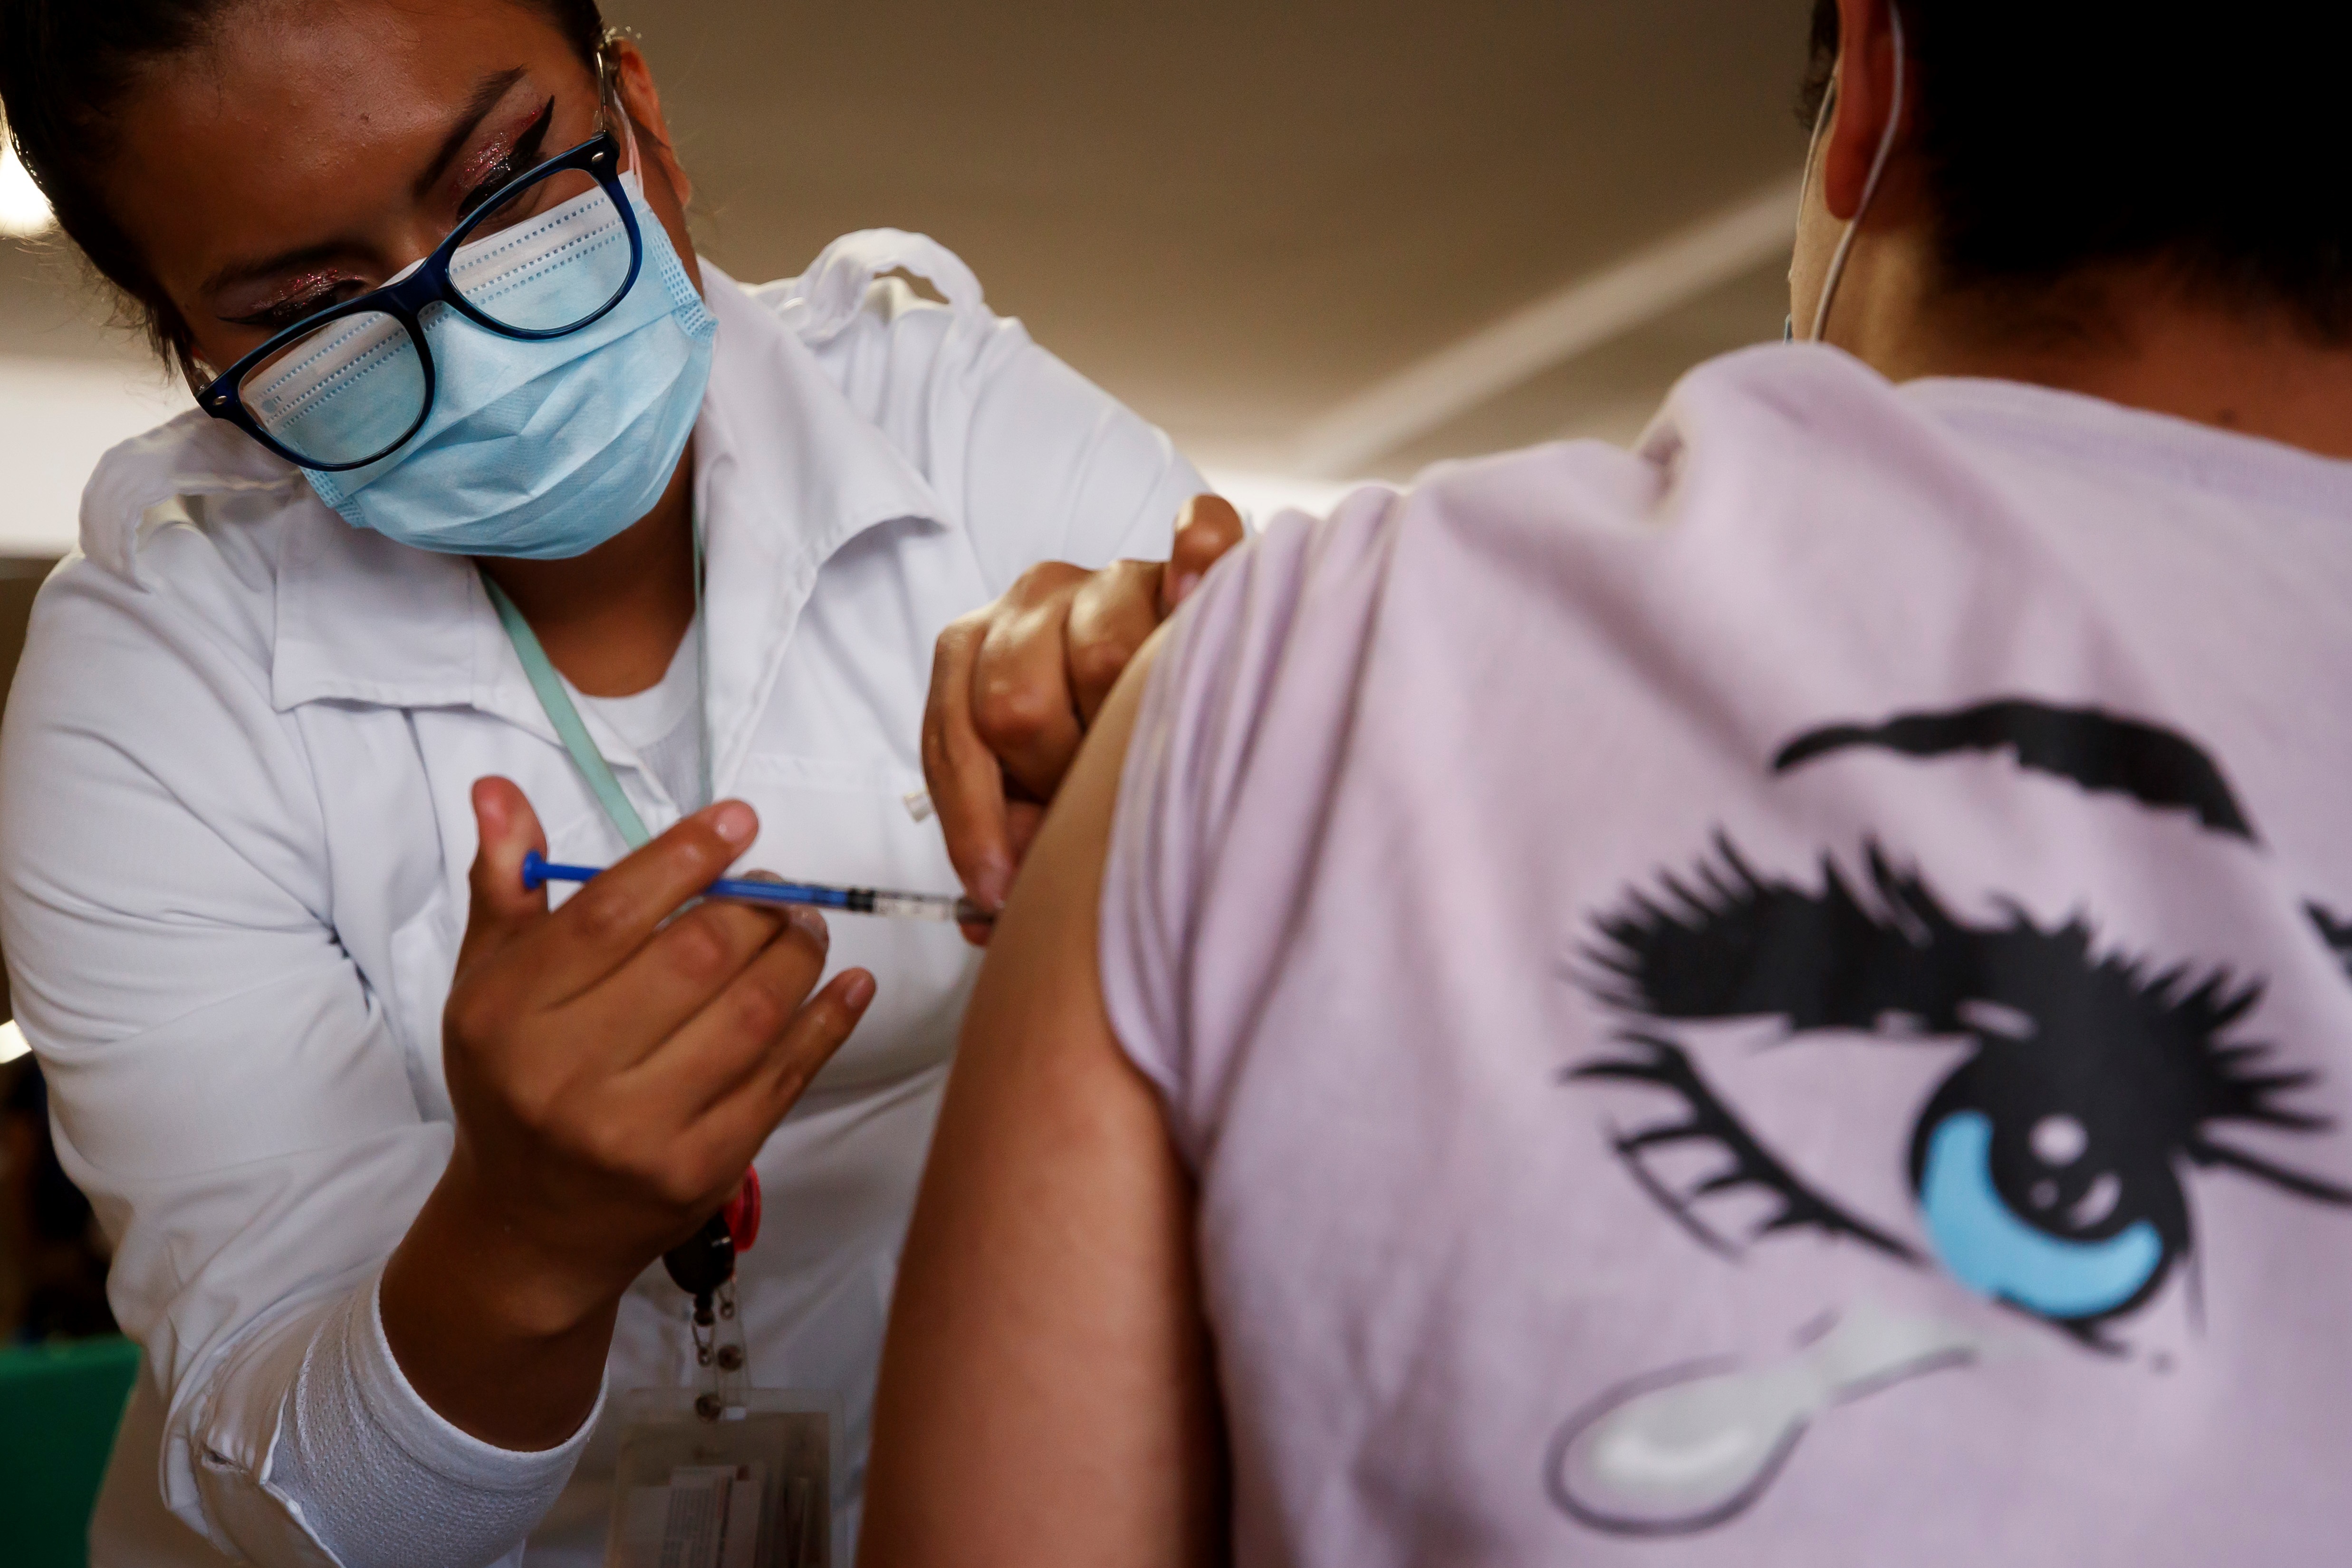 Las personas que sean voluntarias recibirán beneficios como atención médica adicional al seguimiento de los efectos de la vacuna (Foto: José Méndez / EFE)
